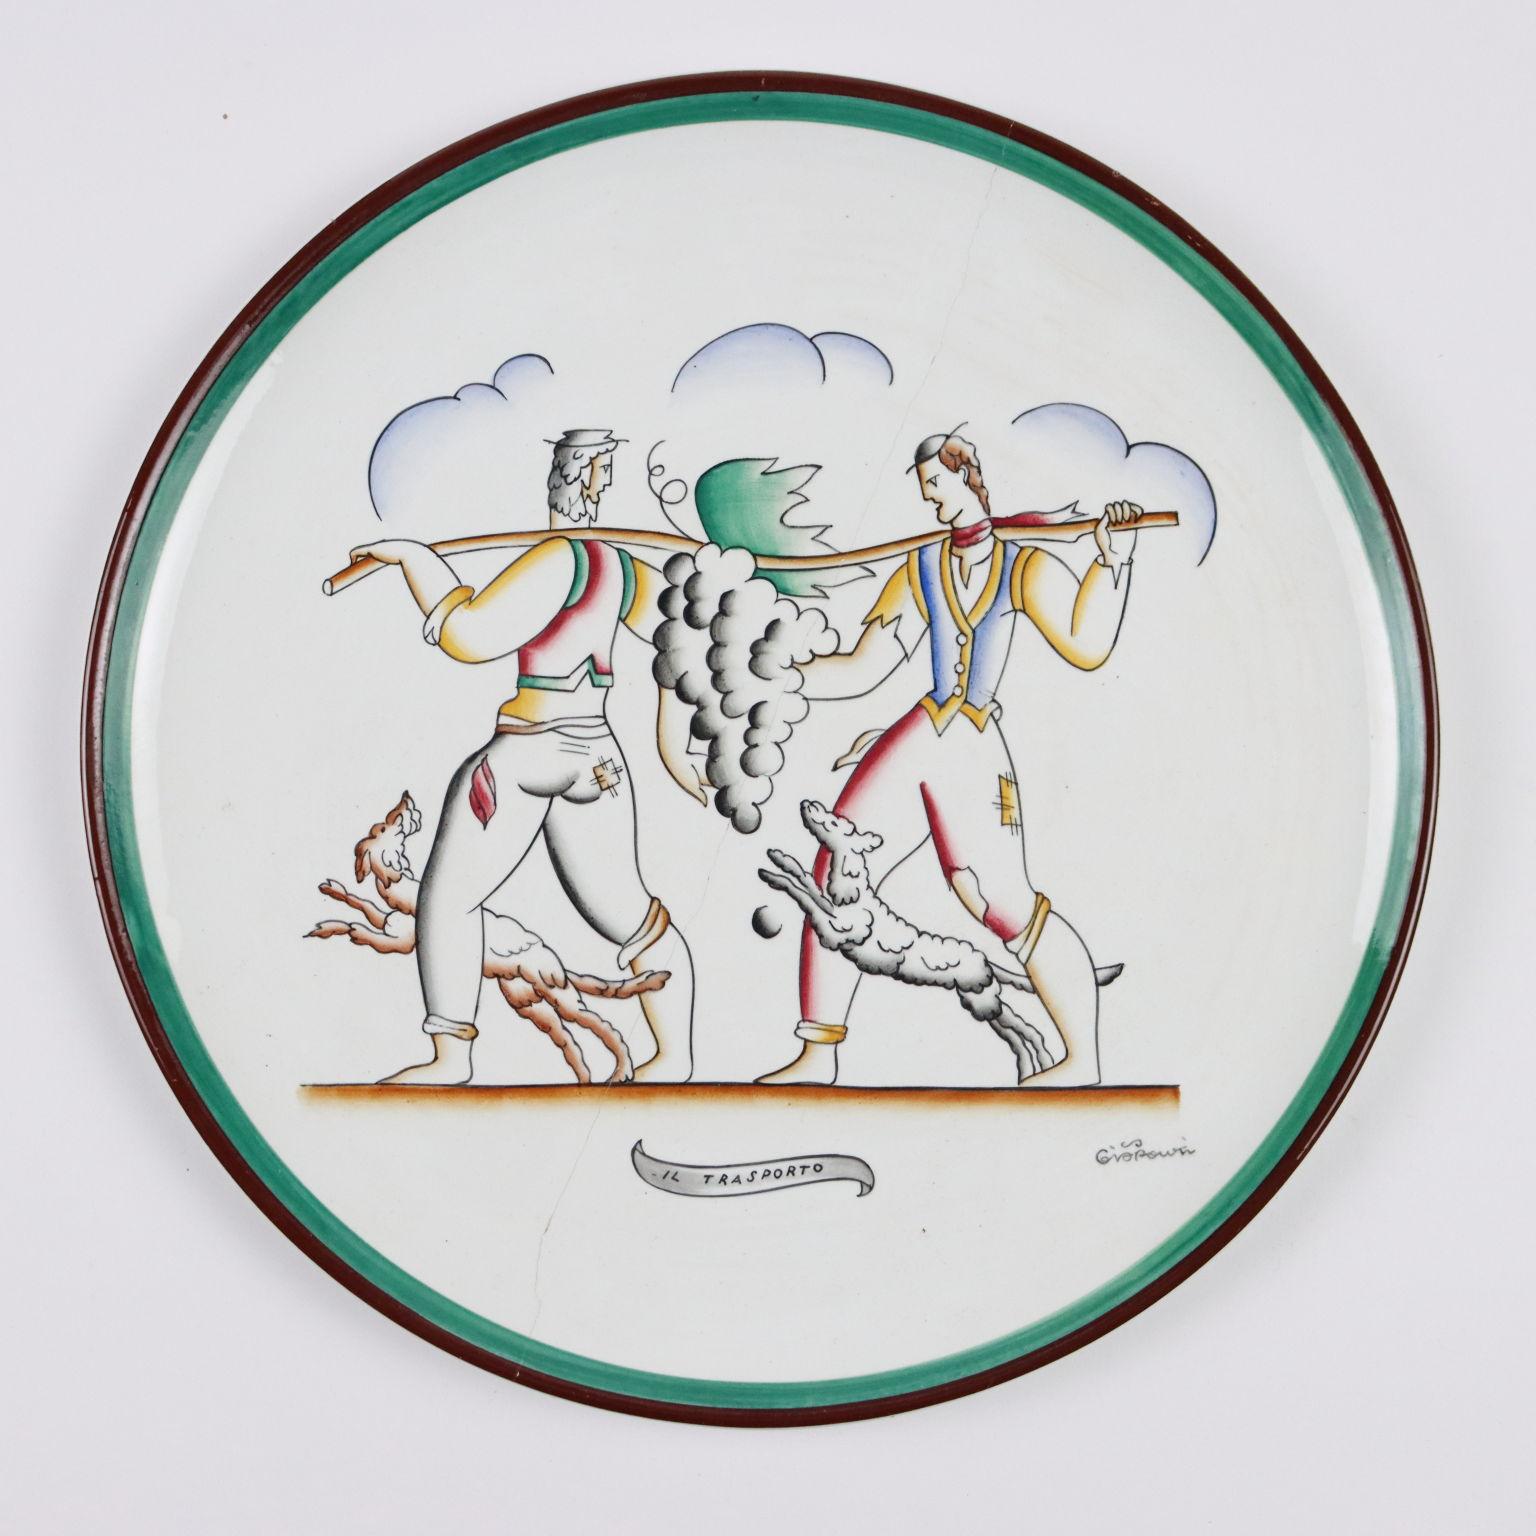 Richard Ginori Plates by Gio Ponti Ceramic Italy 1920s-1930s 1